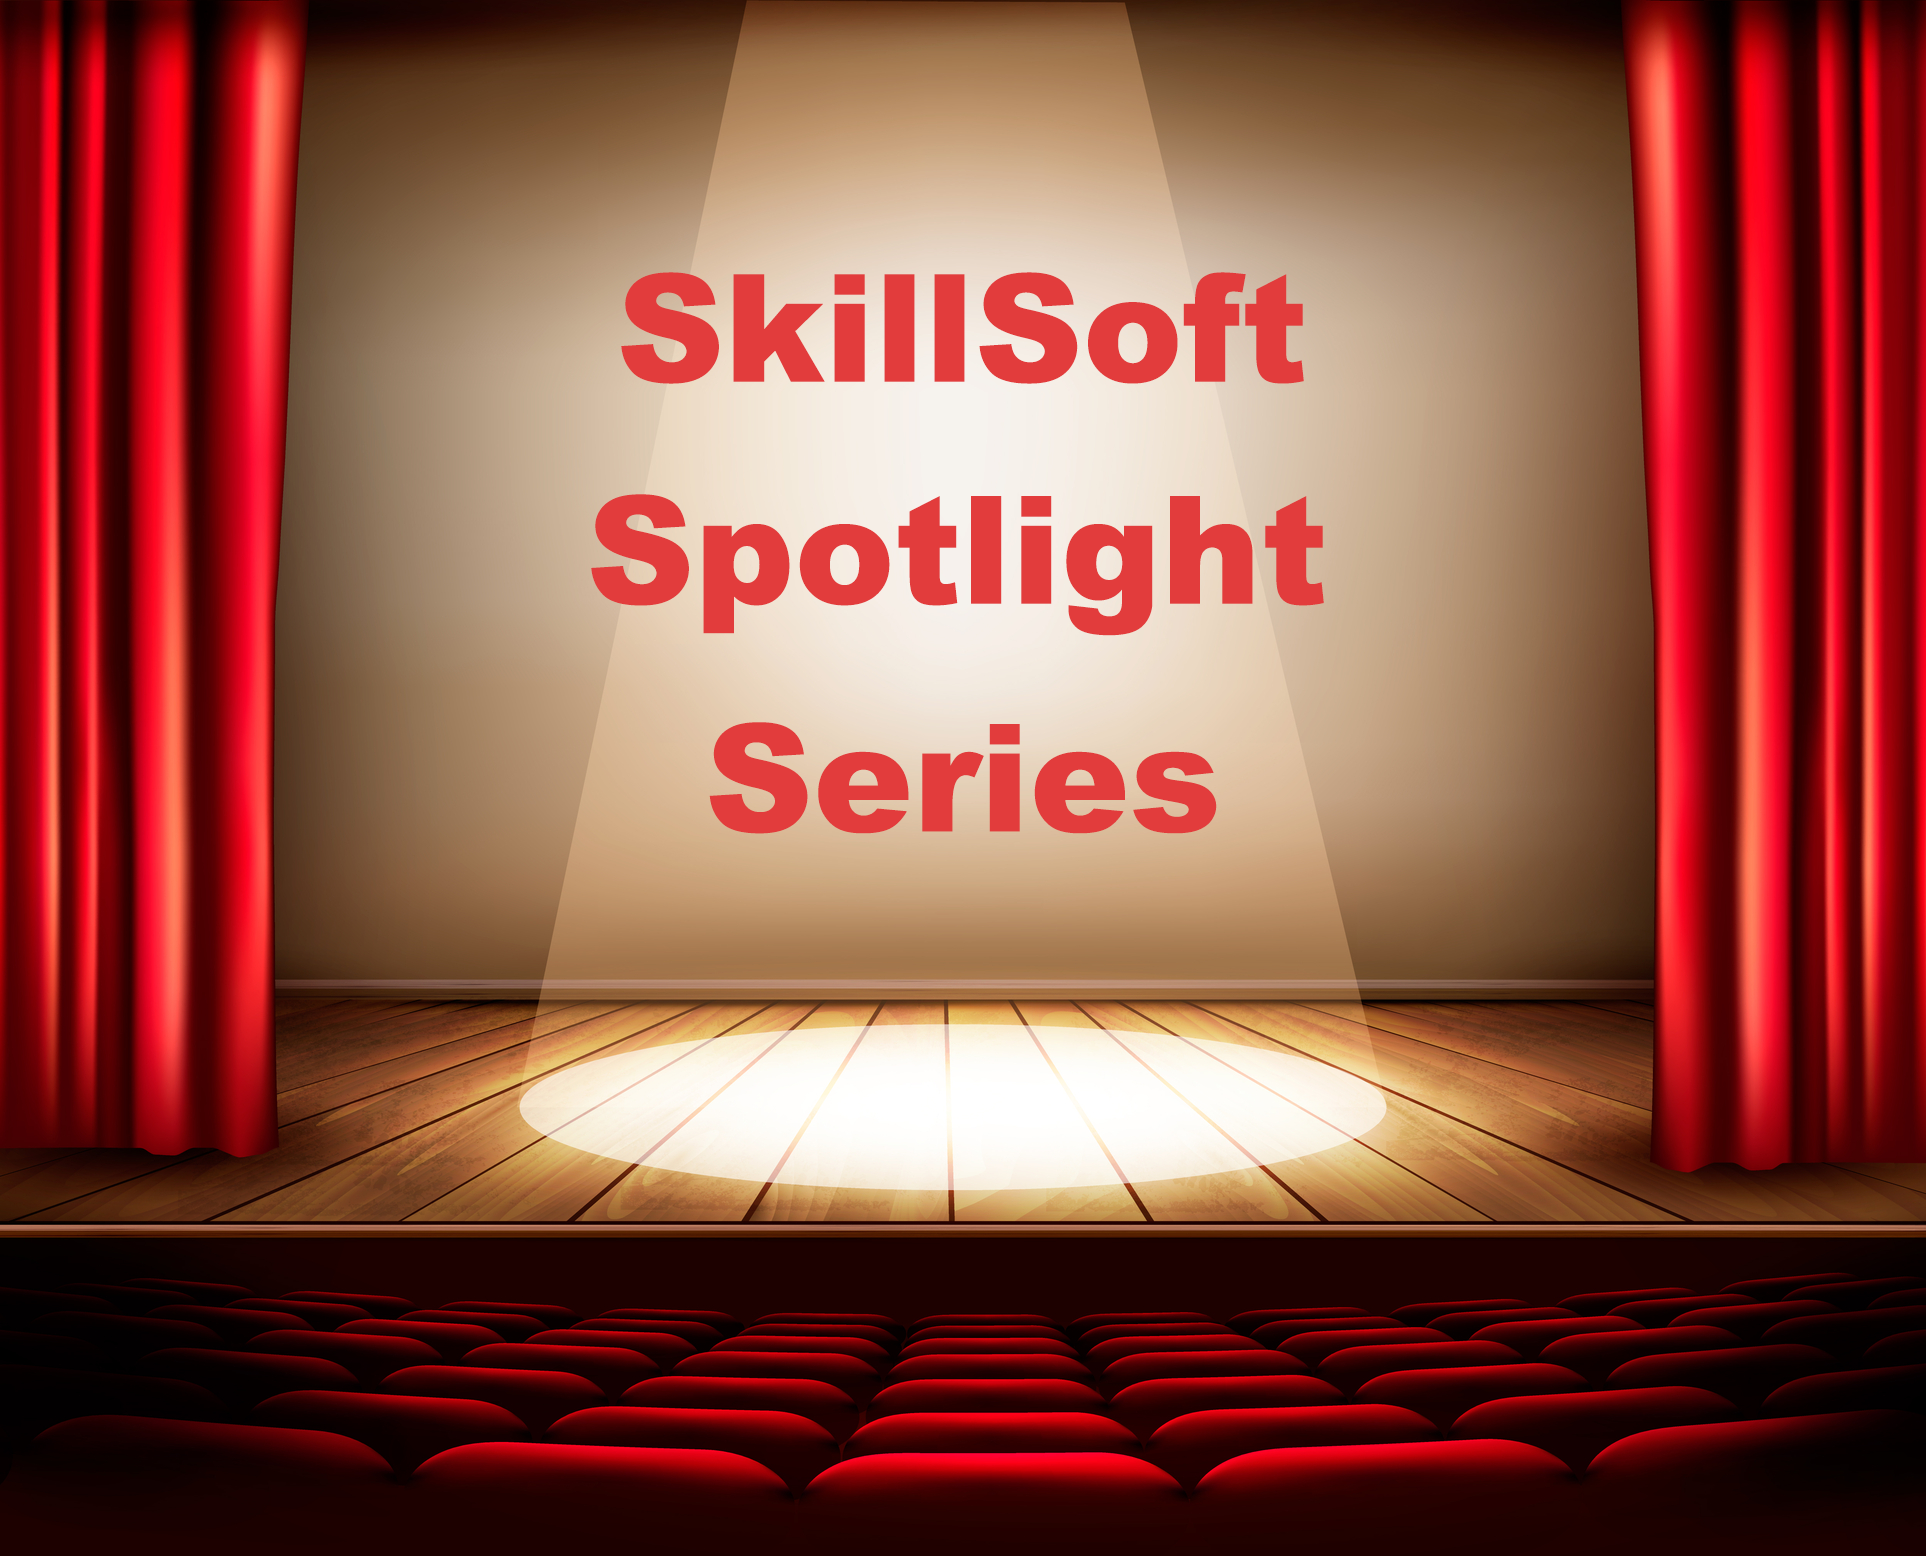 SkillSoft Spotlight Series